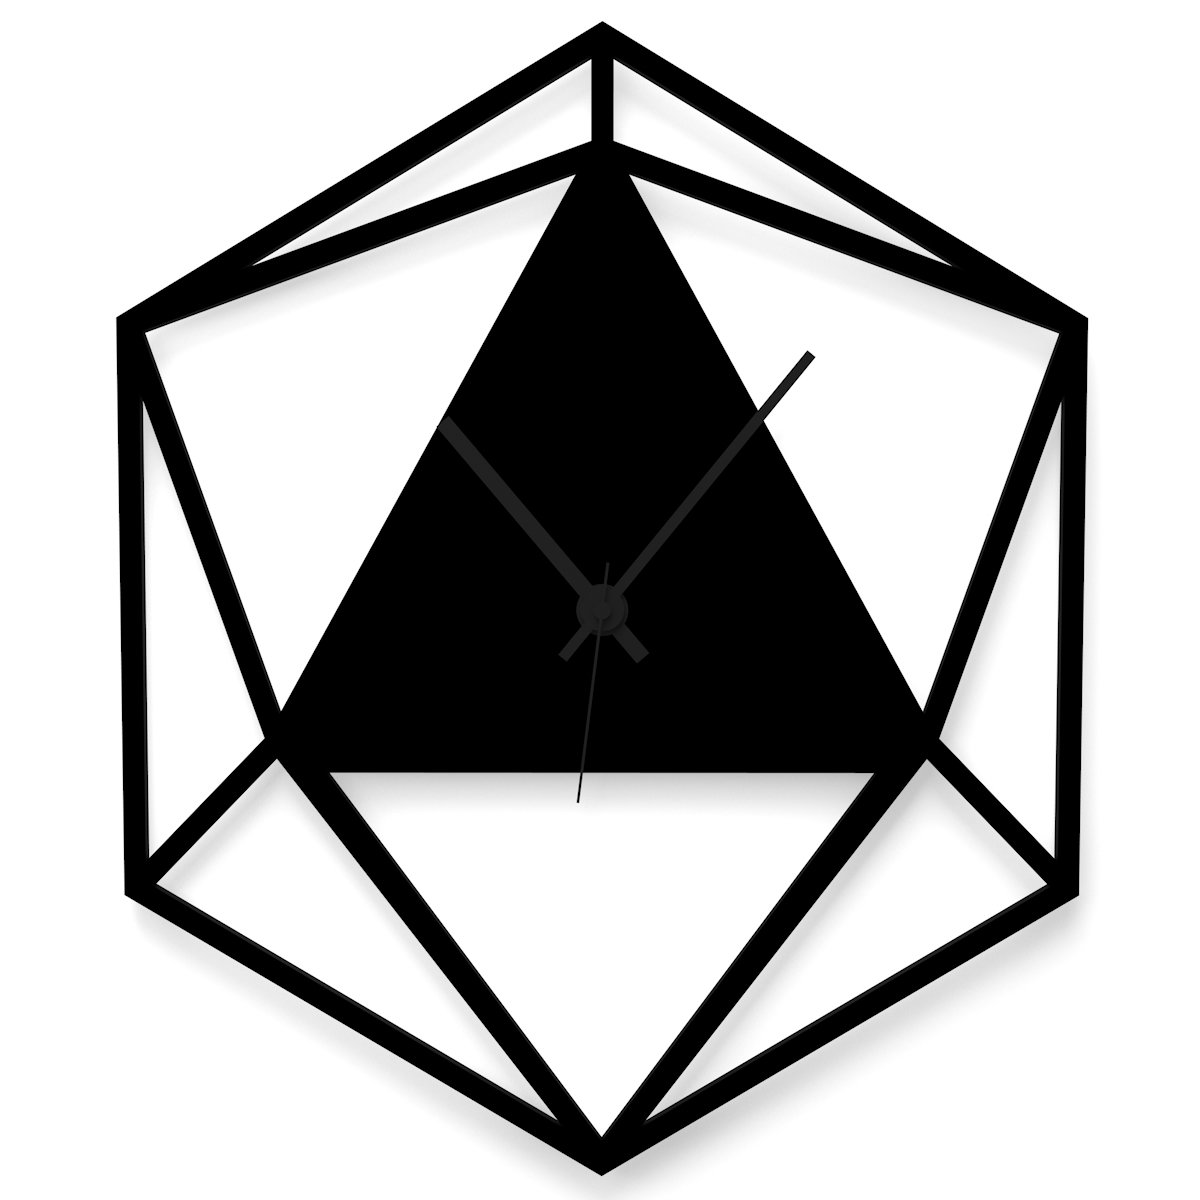 WANDKINGS Wanduhr Triangle aus Acrylglas, in 11 Farben erhältlich (Farbe: Uhr = Schwarz matt; Zeiger = Schwarz)